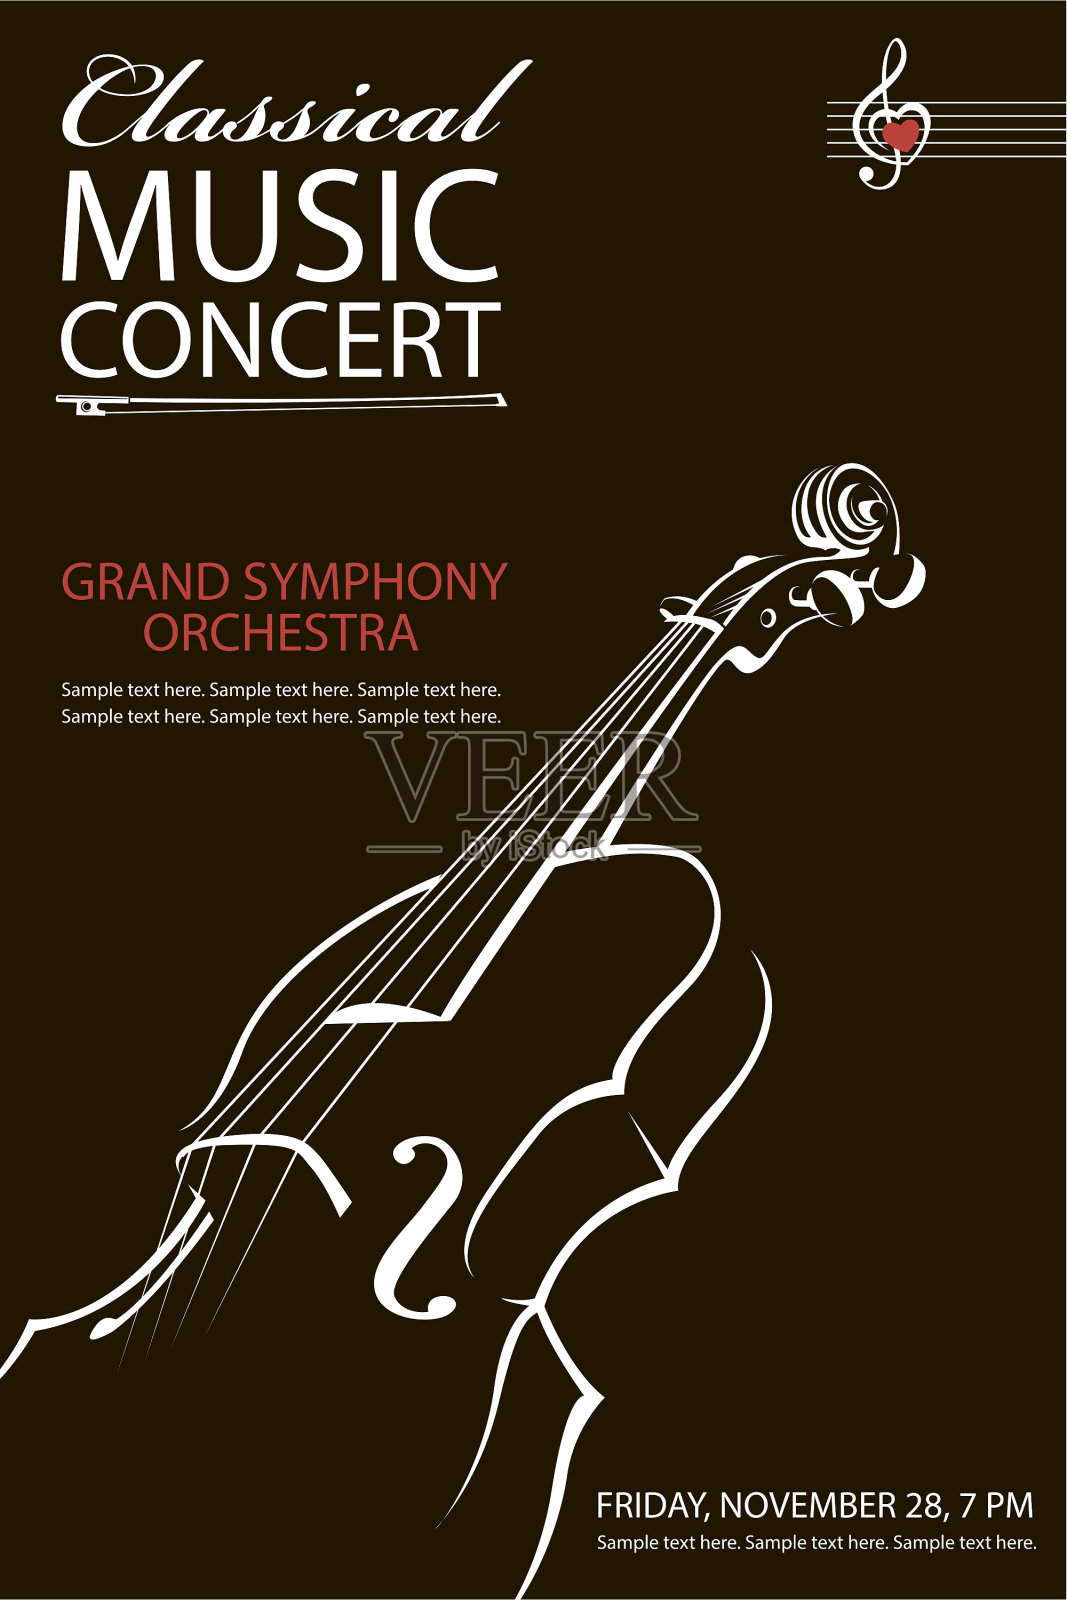 古典音乐会的海报设计模板素材